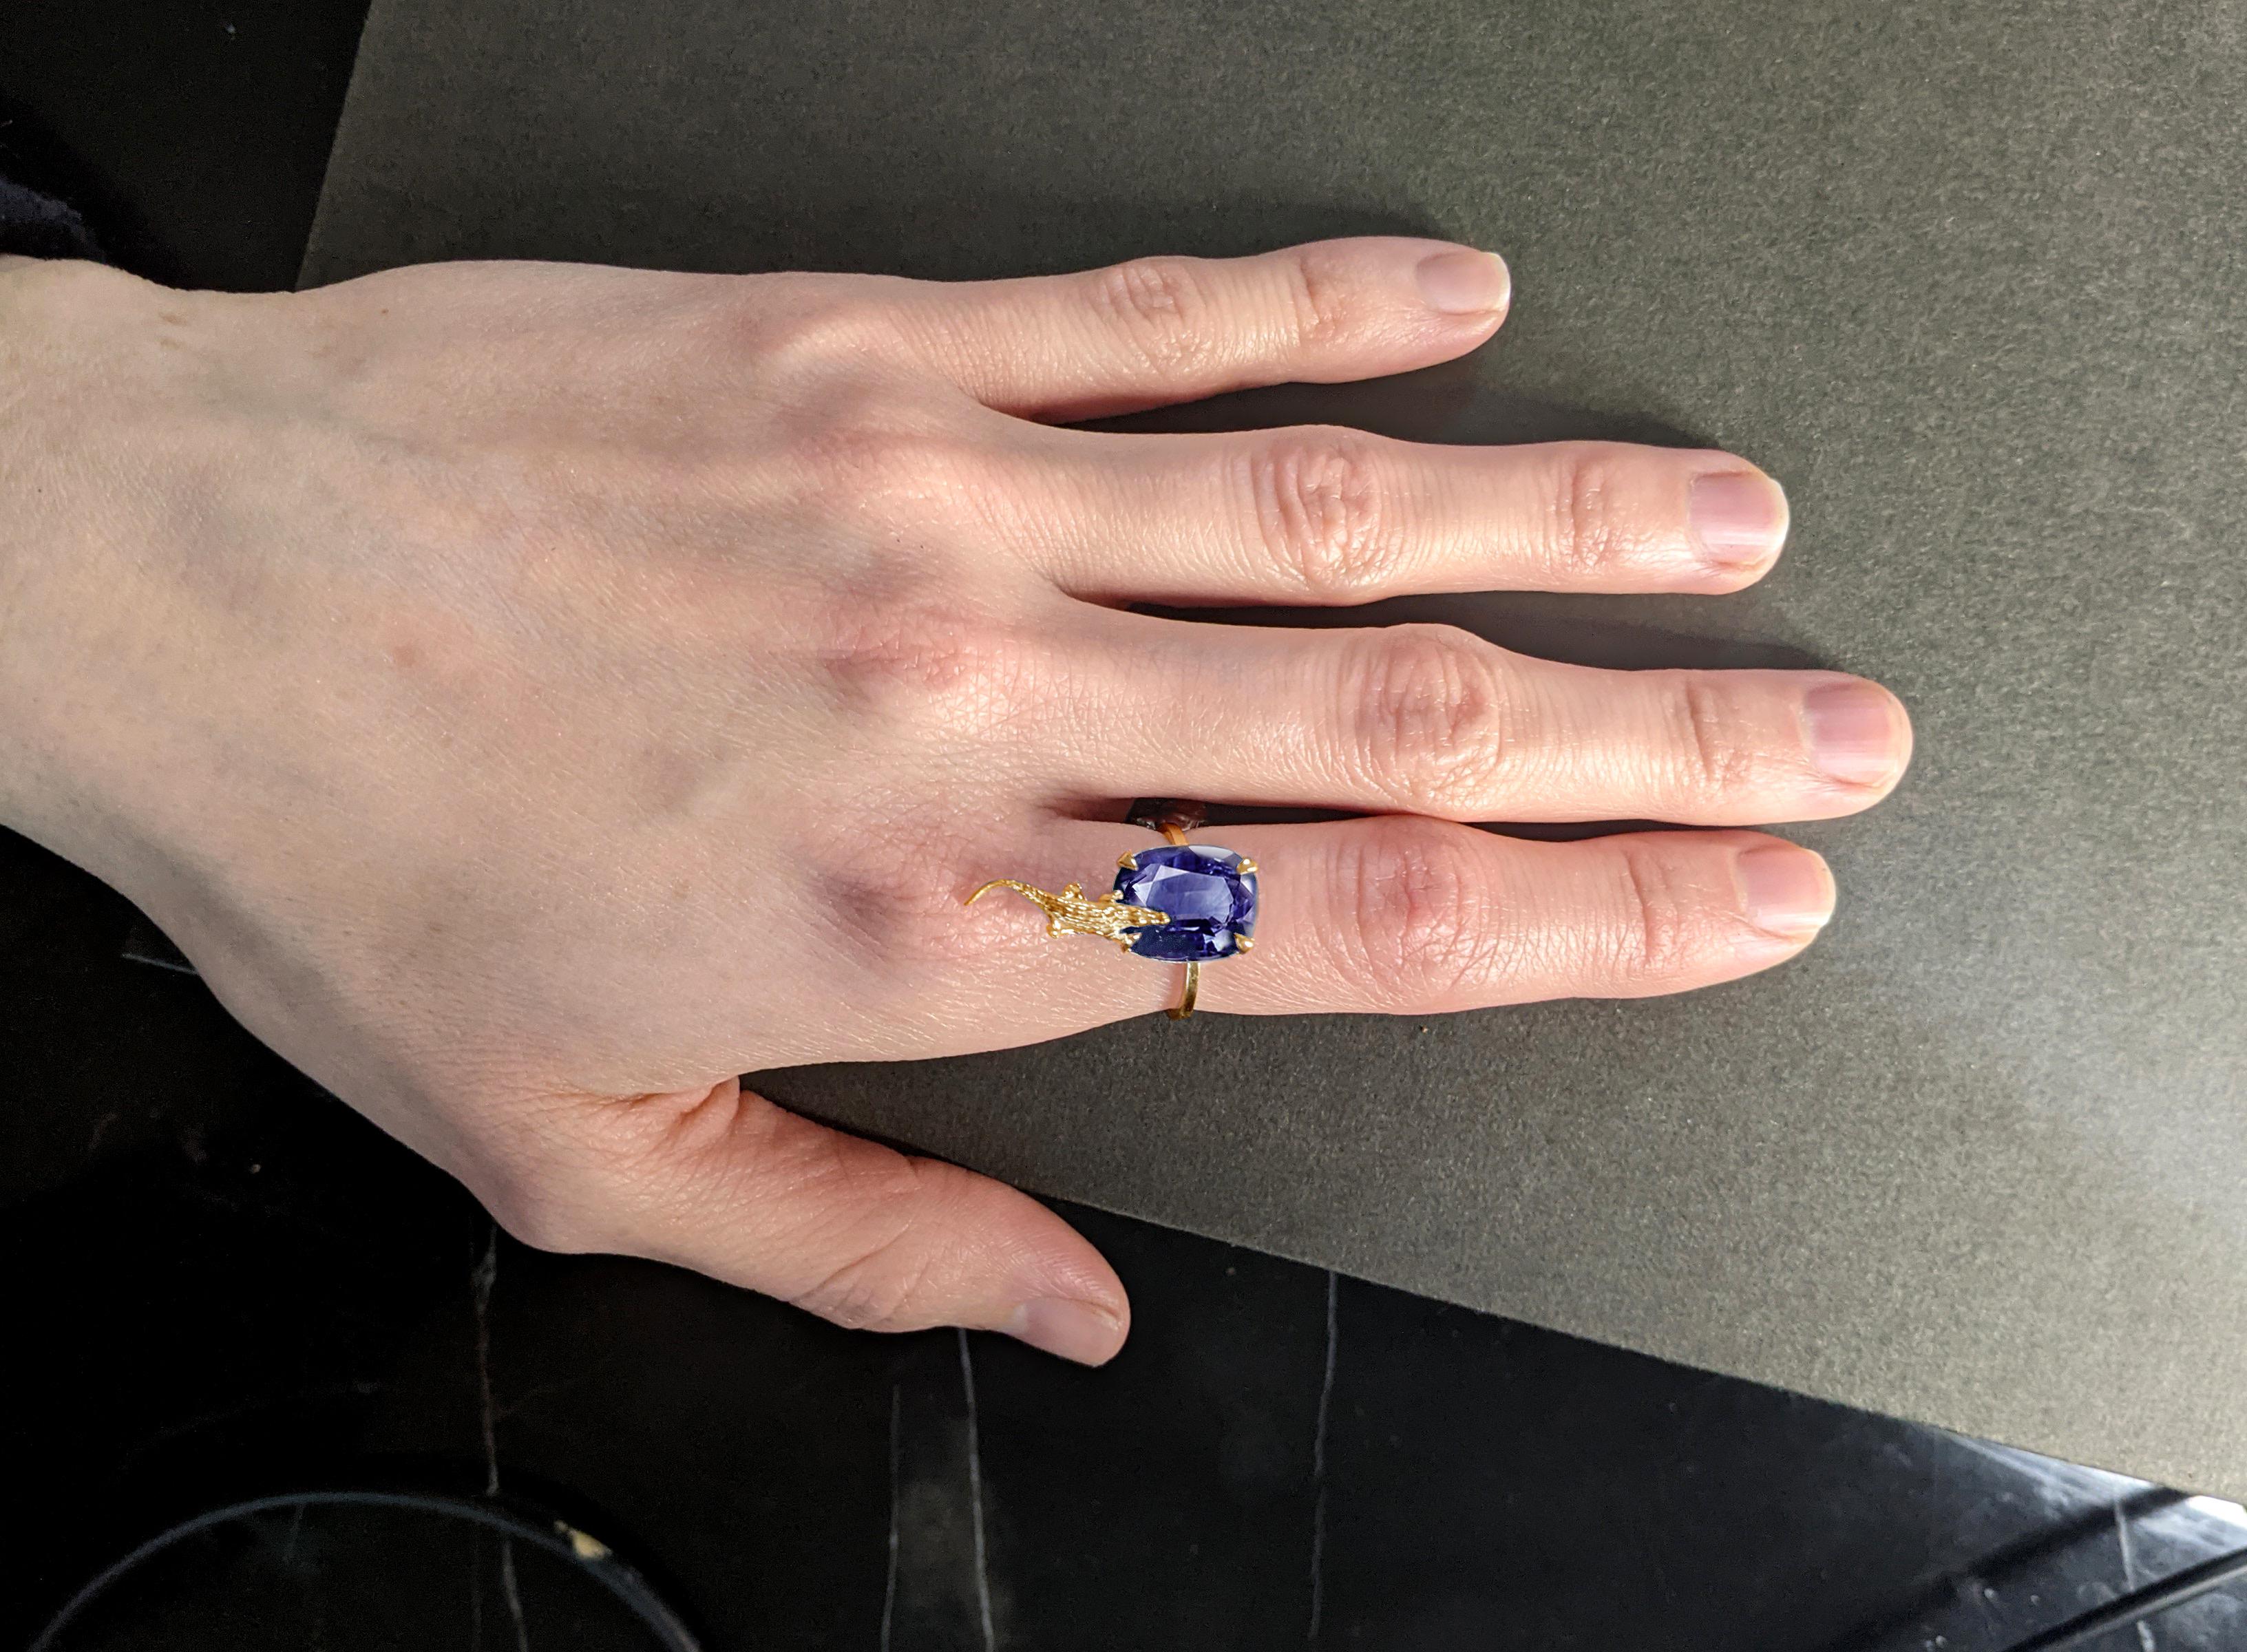 Dieser zeitgenössische mesopotamische Ring aus 18 Karat Gelbgold ist mit 6,96 Karat natürlichem, lebhaft blauem Cushion-Saphir aus Ceylon besetzt, 12,5 x 8,8 mm. Der Edelstein zieht die Aufmerksamkeit auf sich und ist in einem modernen Ring gut